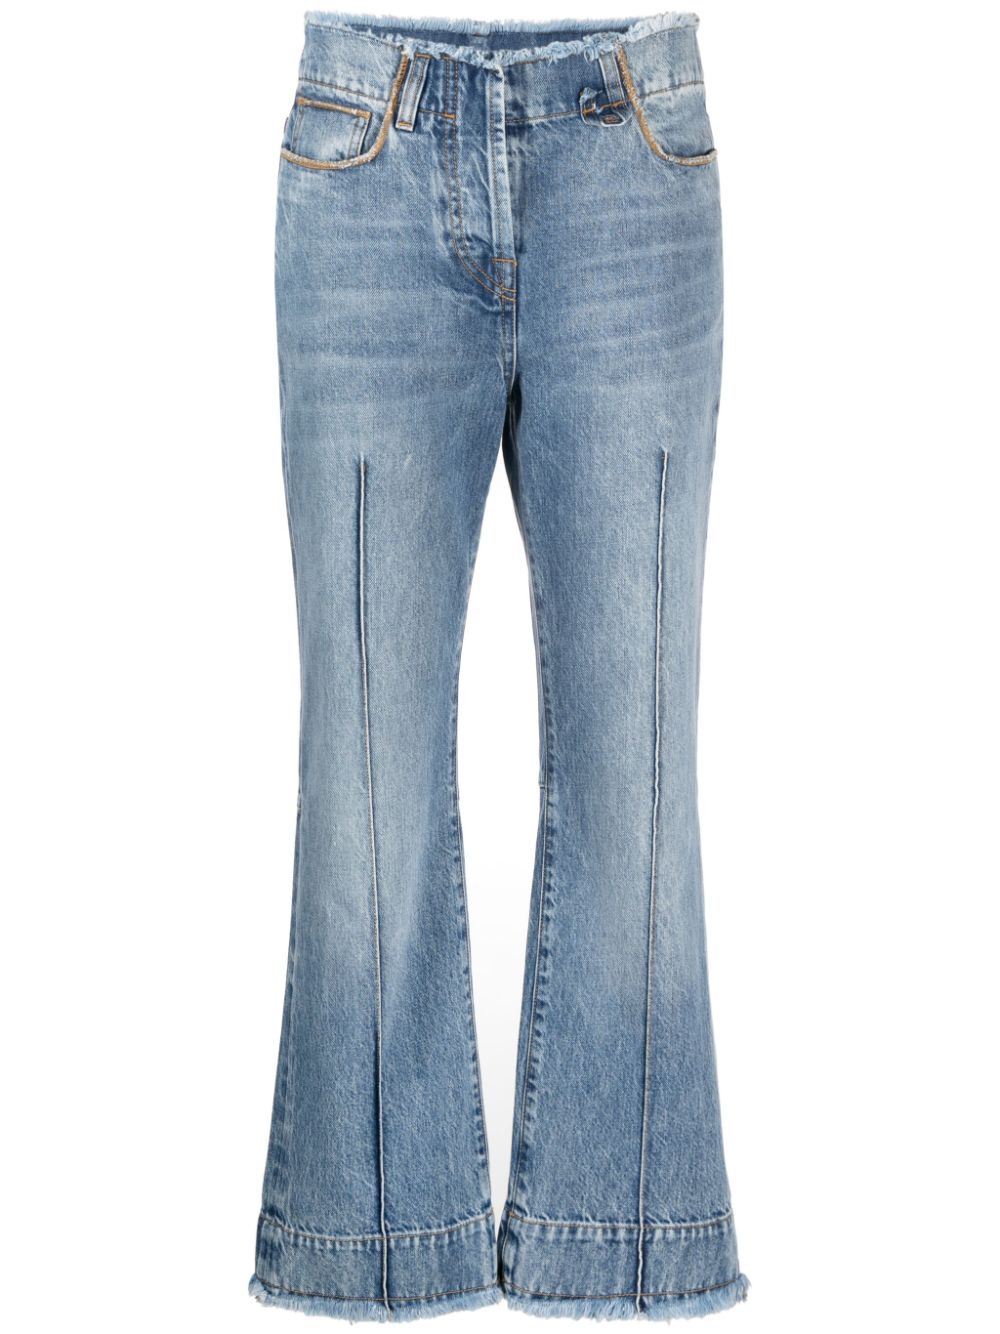 Le de Nimes Linon cropped jeans